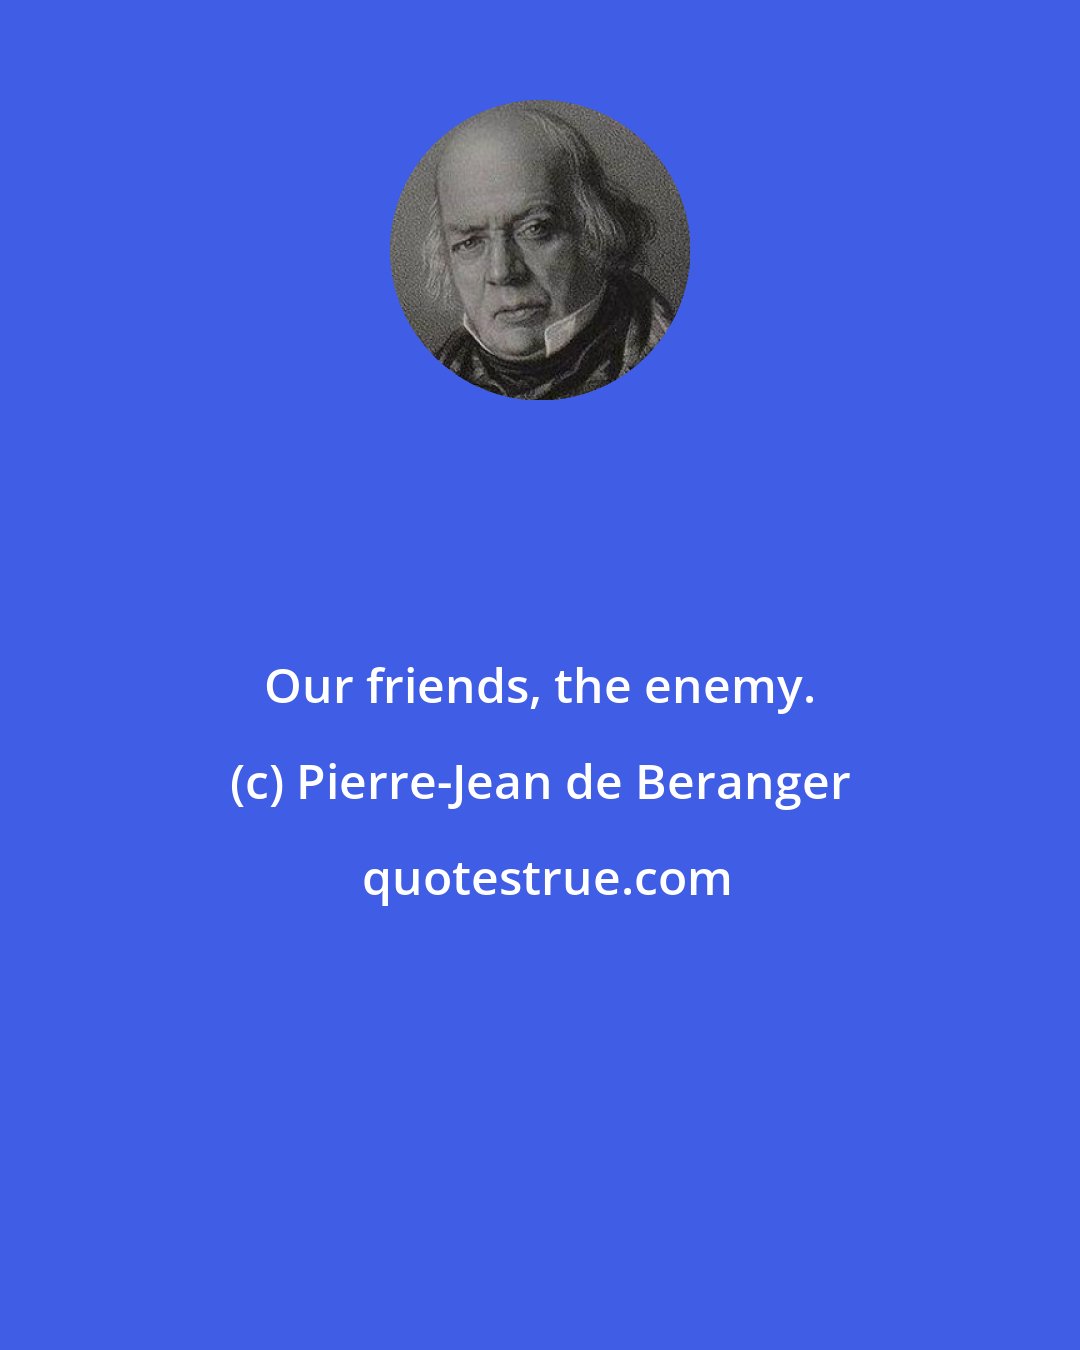 Pierre-Jean de Beranger: Our friends, the enemy.